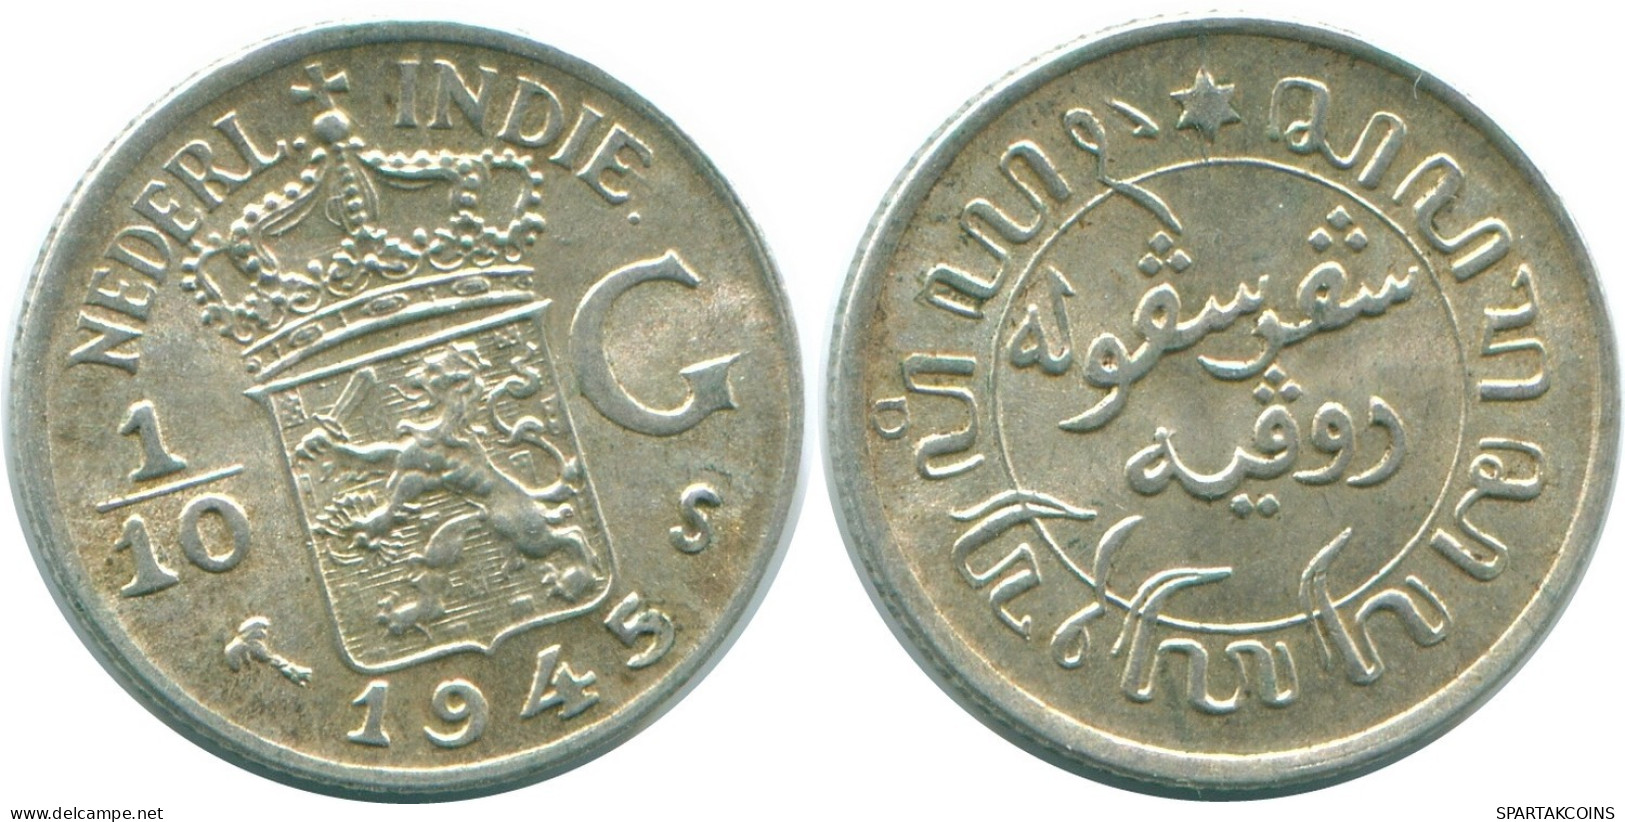 1/10 GULDEN 1945 S NETHERLANDS EAST INDIES SILVER Colonial Coin #NL14041.3.U.A - Niederländisch-Indien